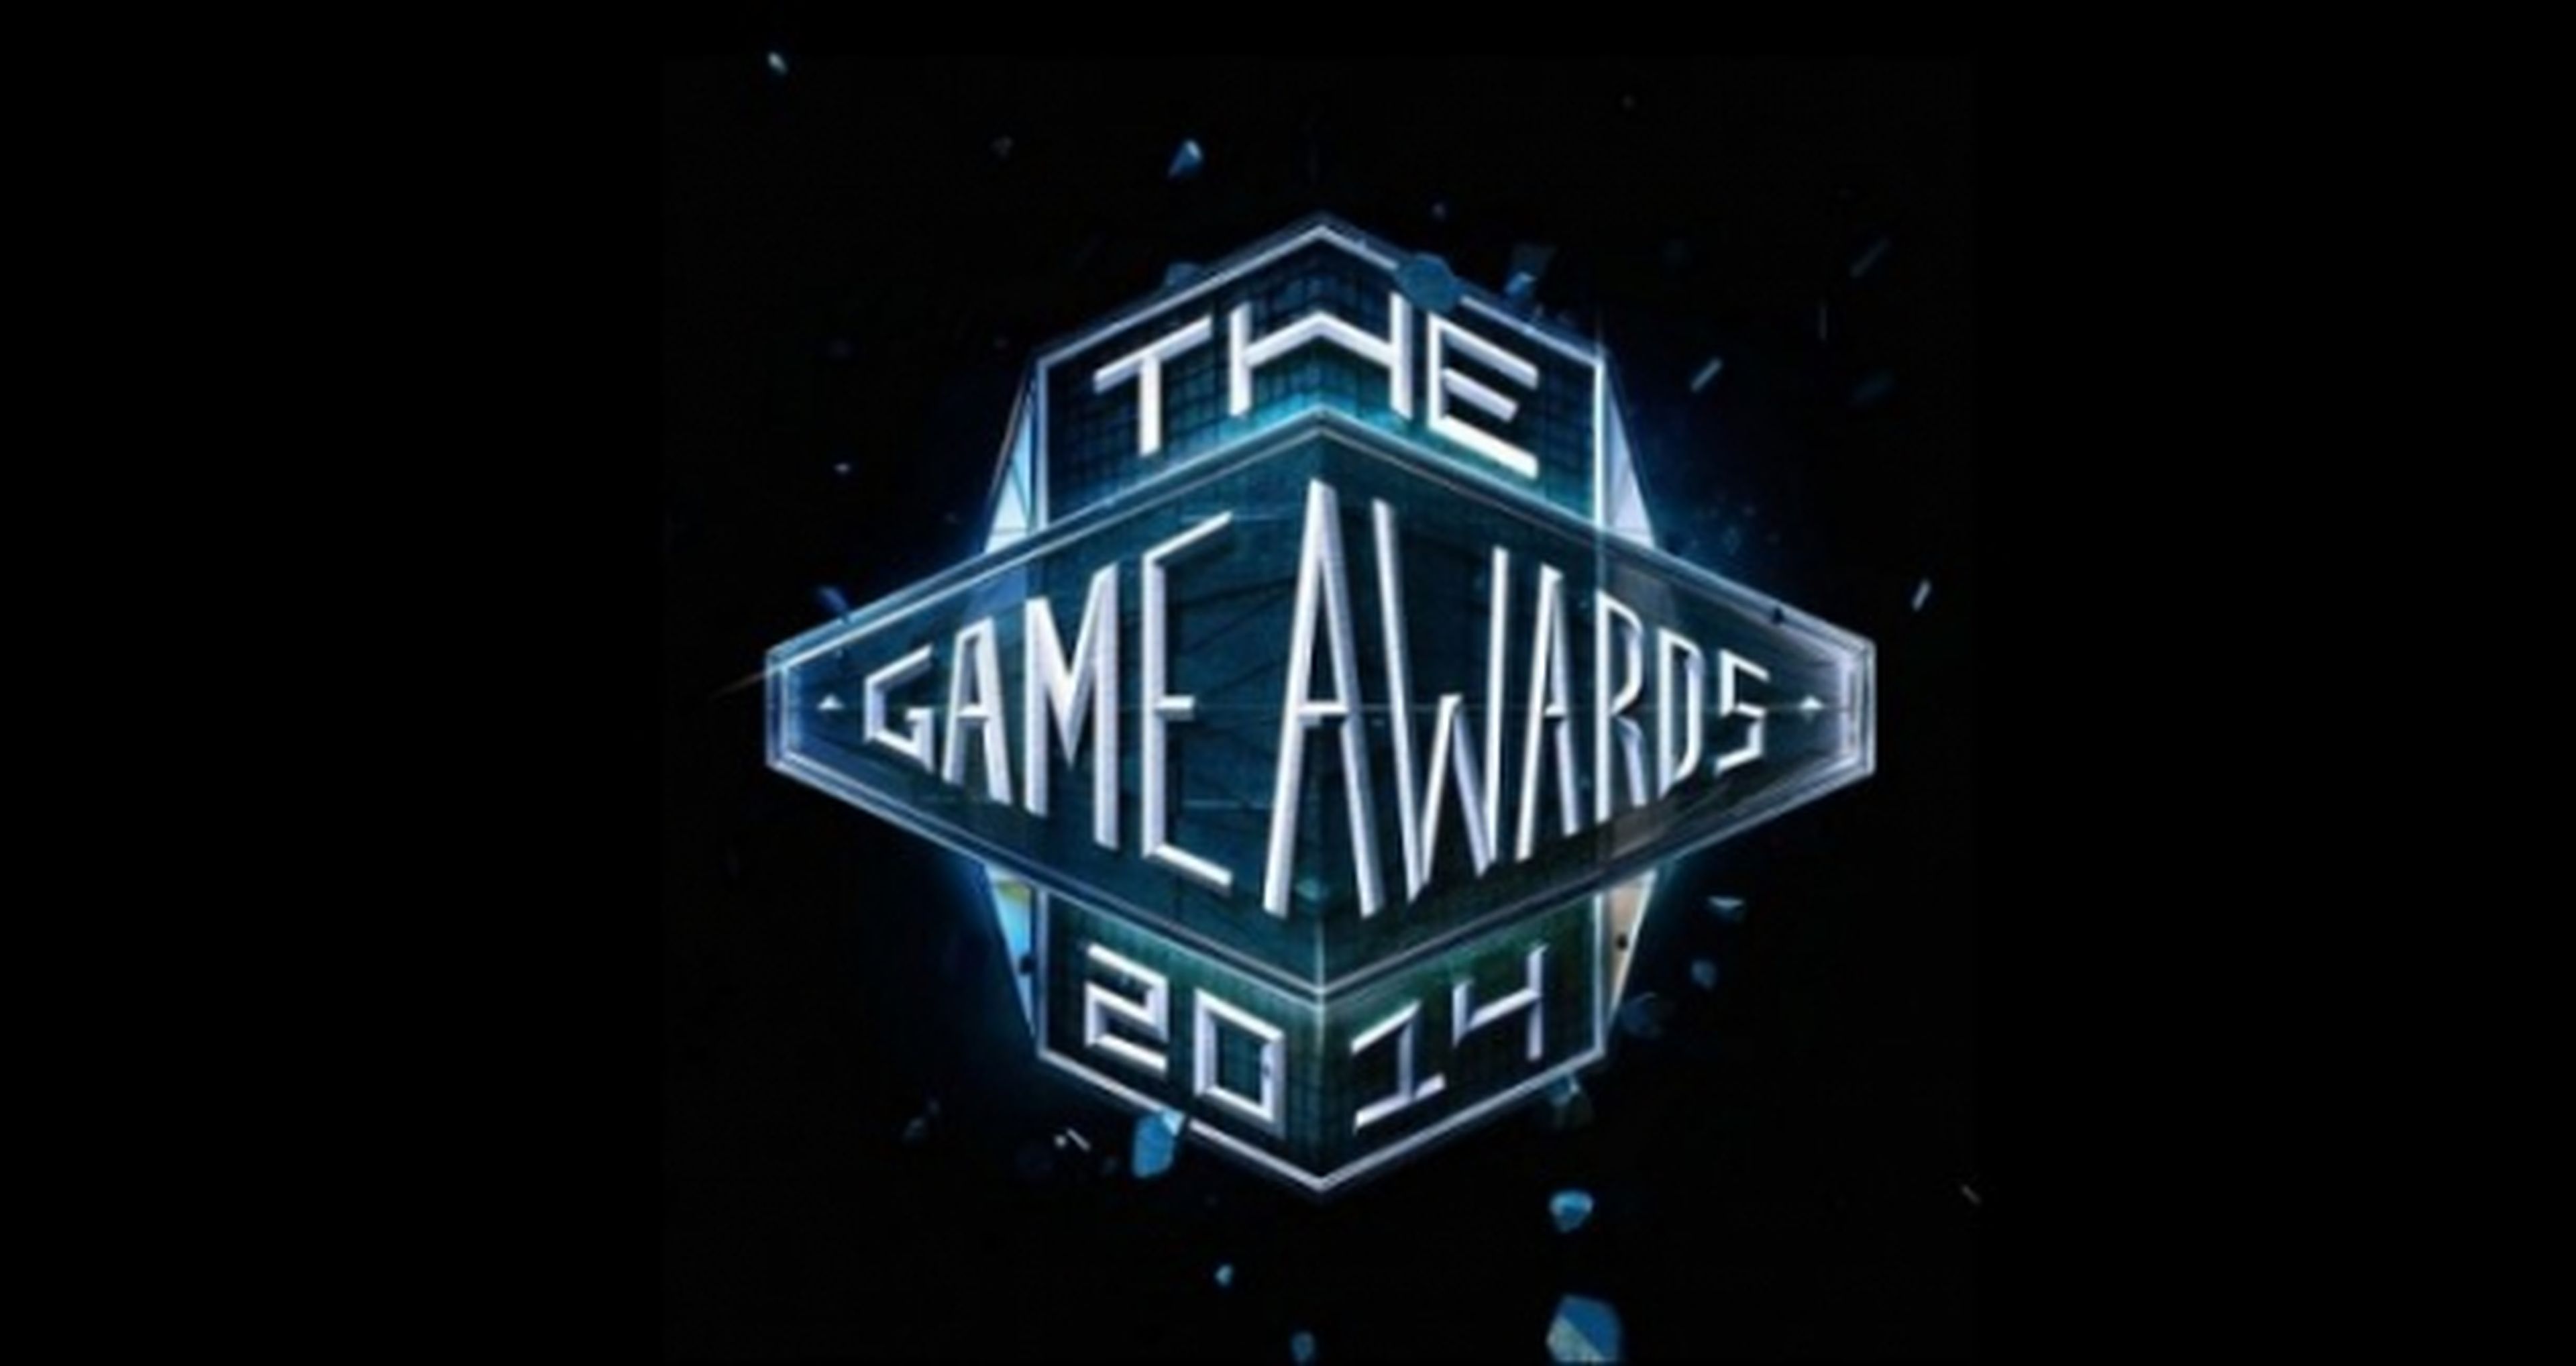 The Game Awards 2014 desvelará más de 12 exclusivas mundiales